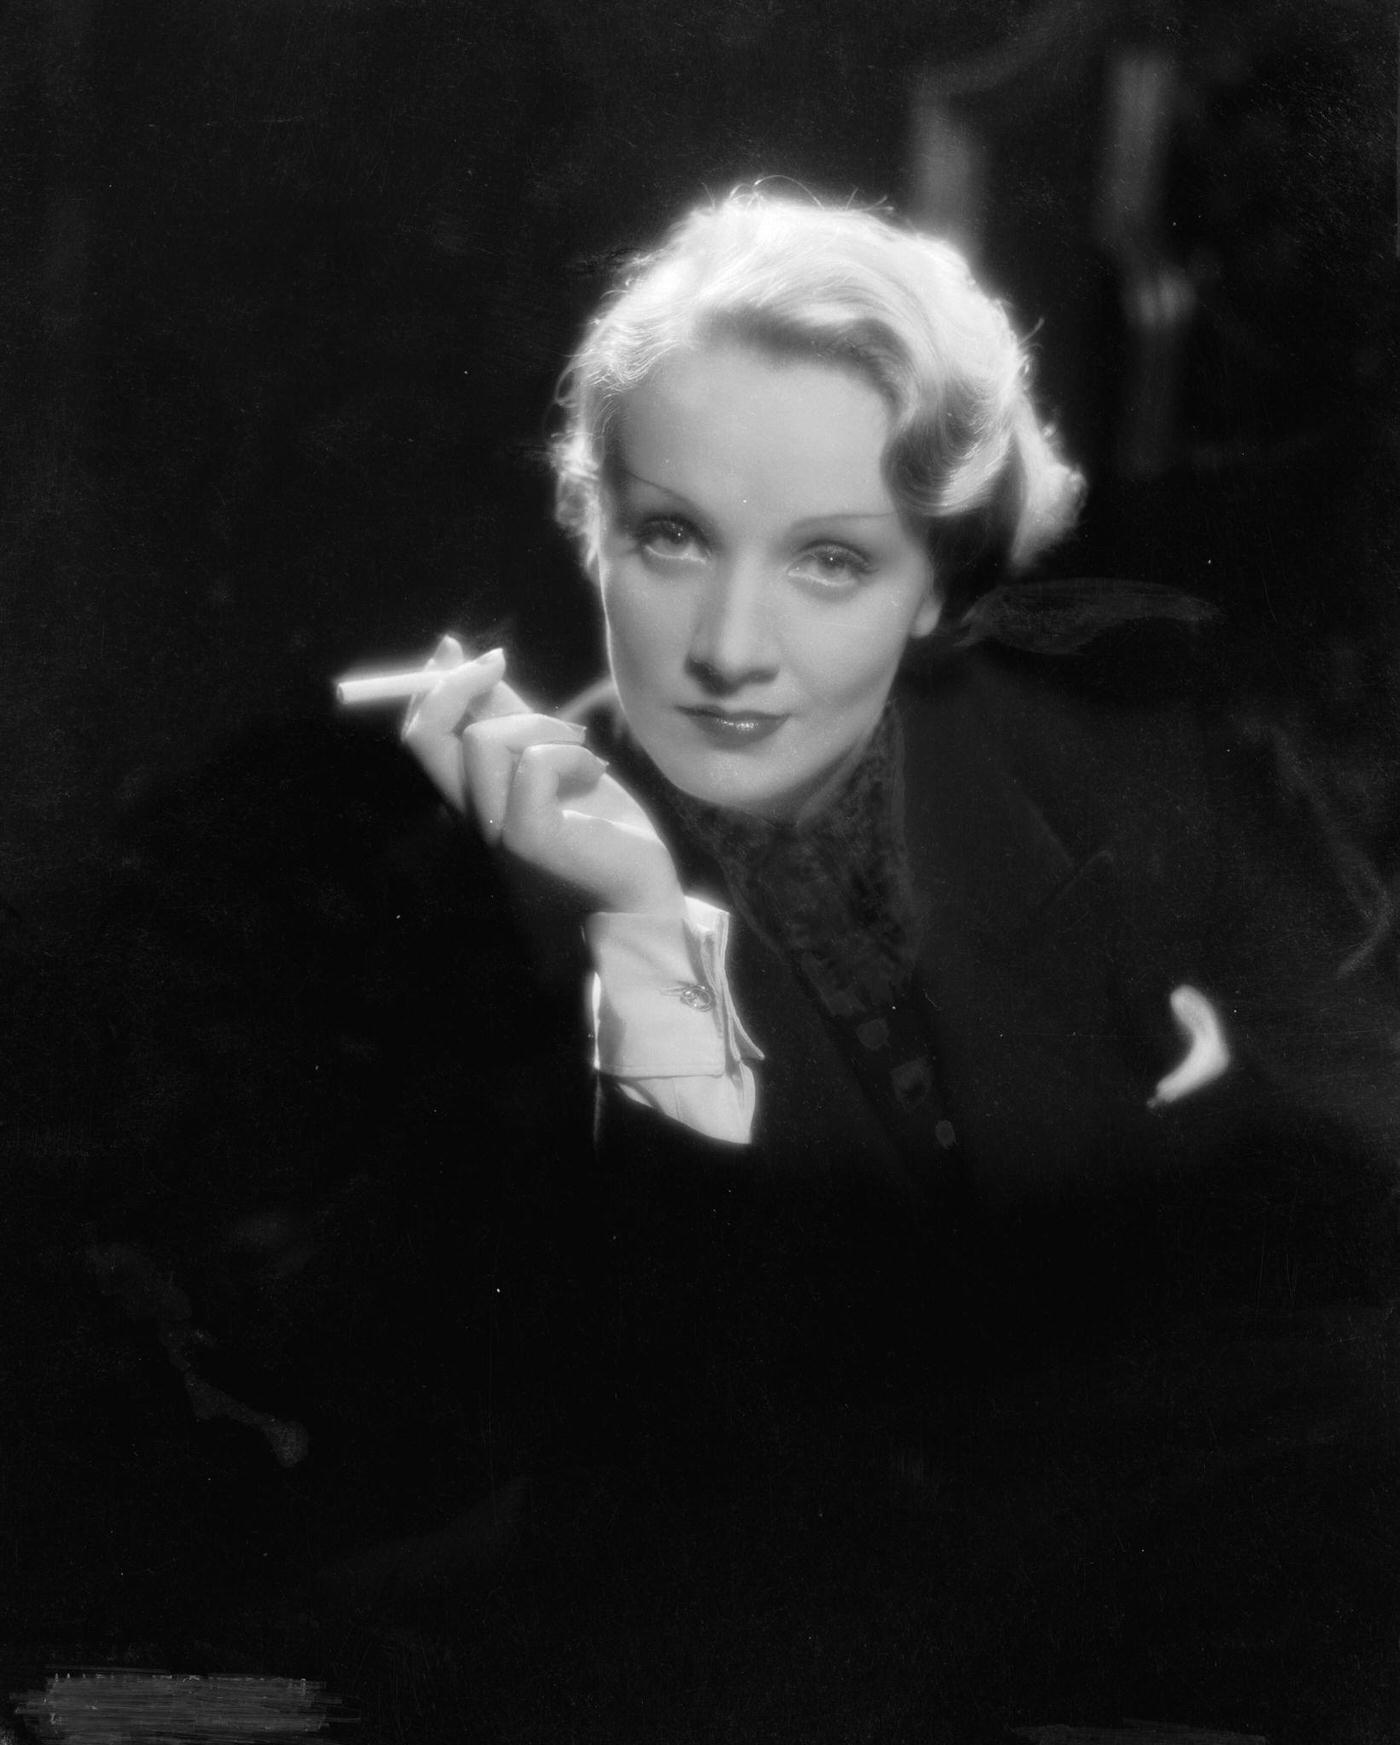 Marlene Dietrich captured smoking in a photograph.